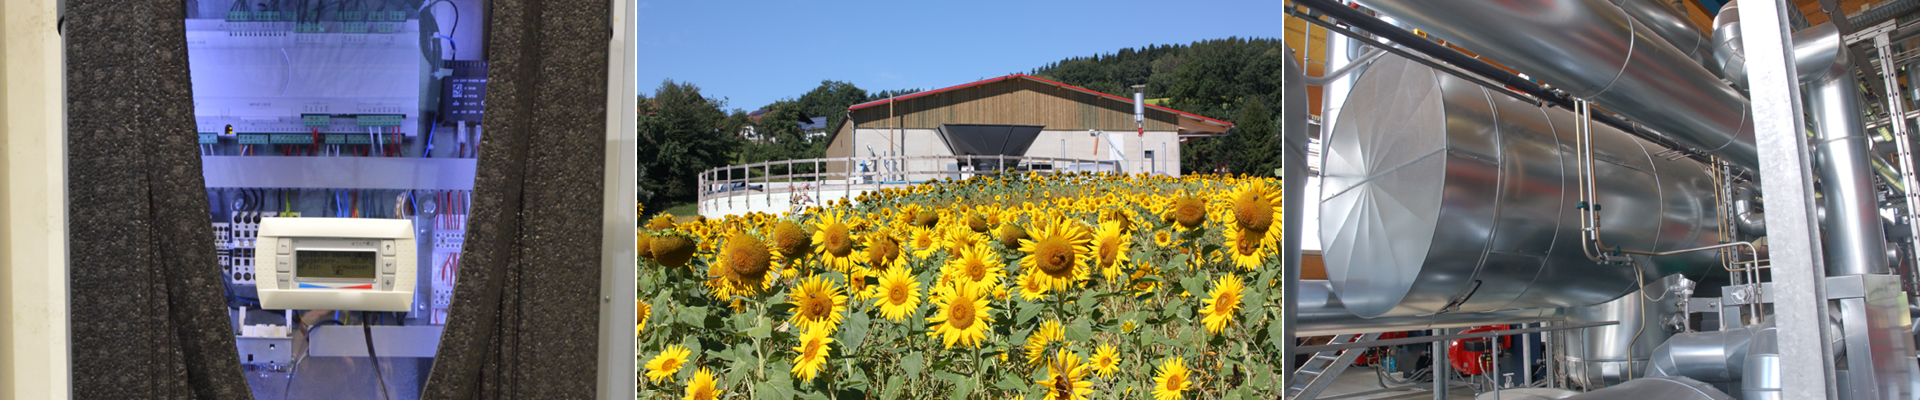 7. Heidener Biogasfachtagung 24. – 25. August 2022 “Biogas aus Stroh, Gülle und Co”